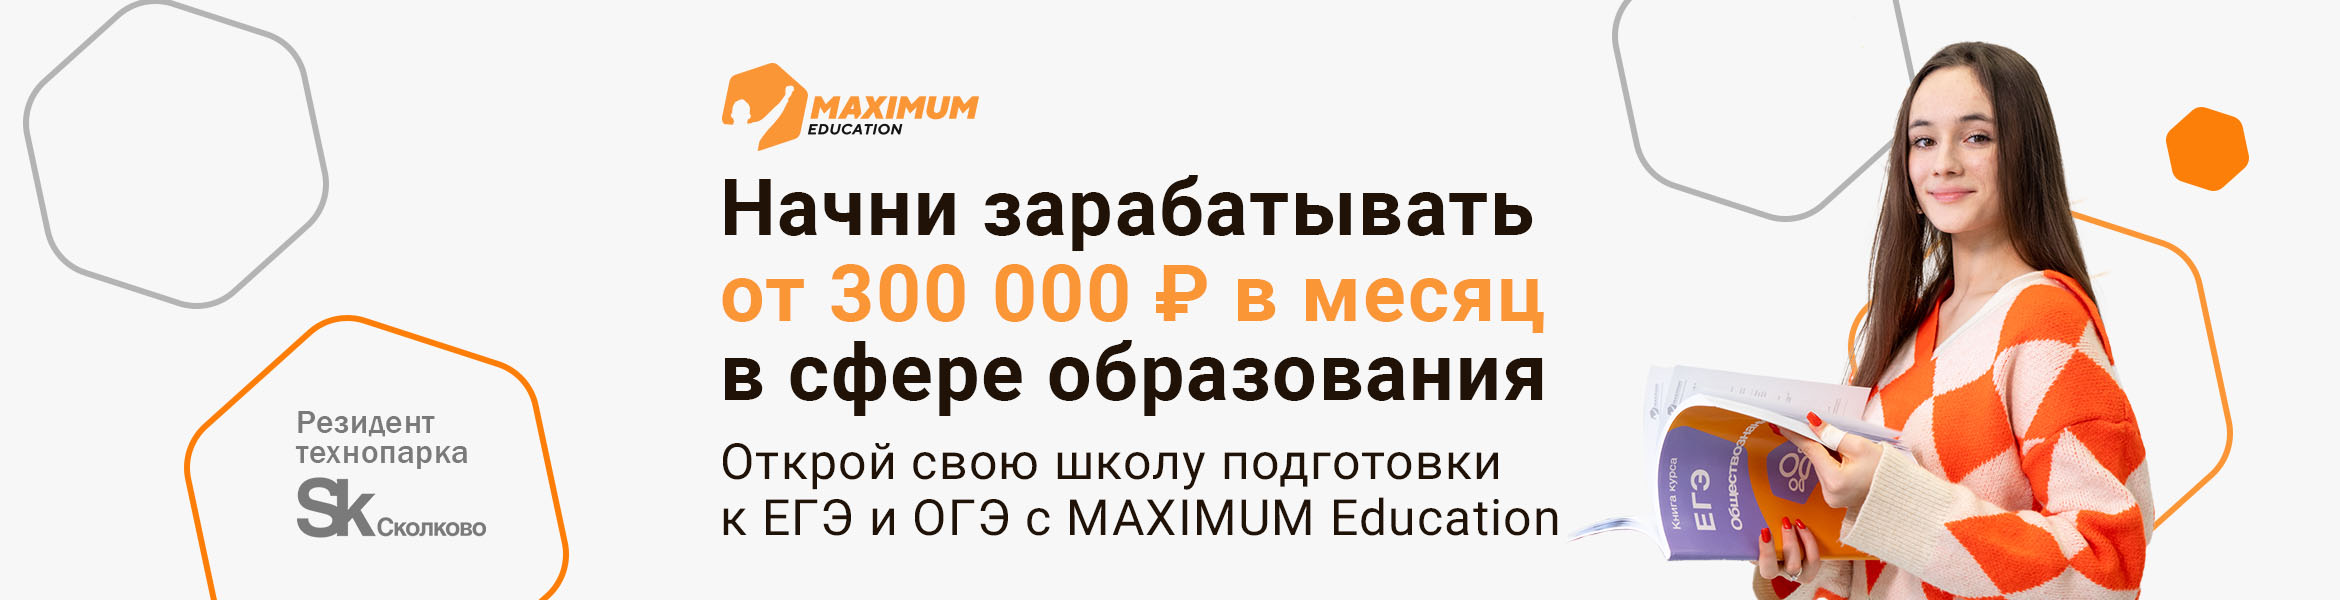 Франшиза образовательной компании MAXIMUM Education